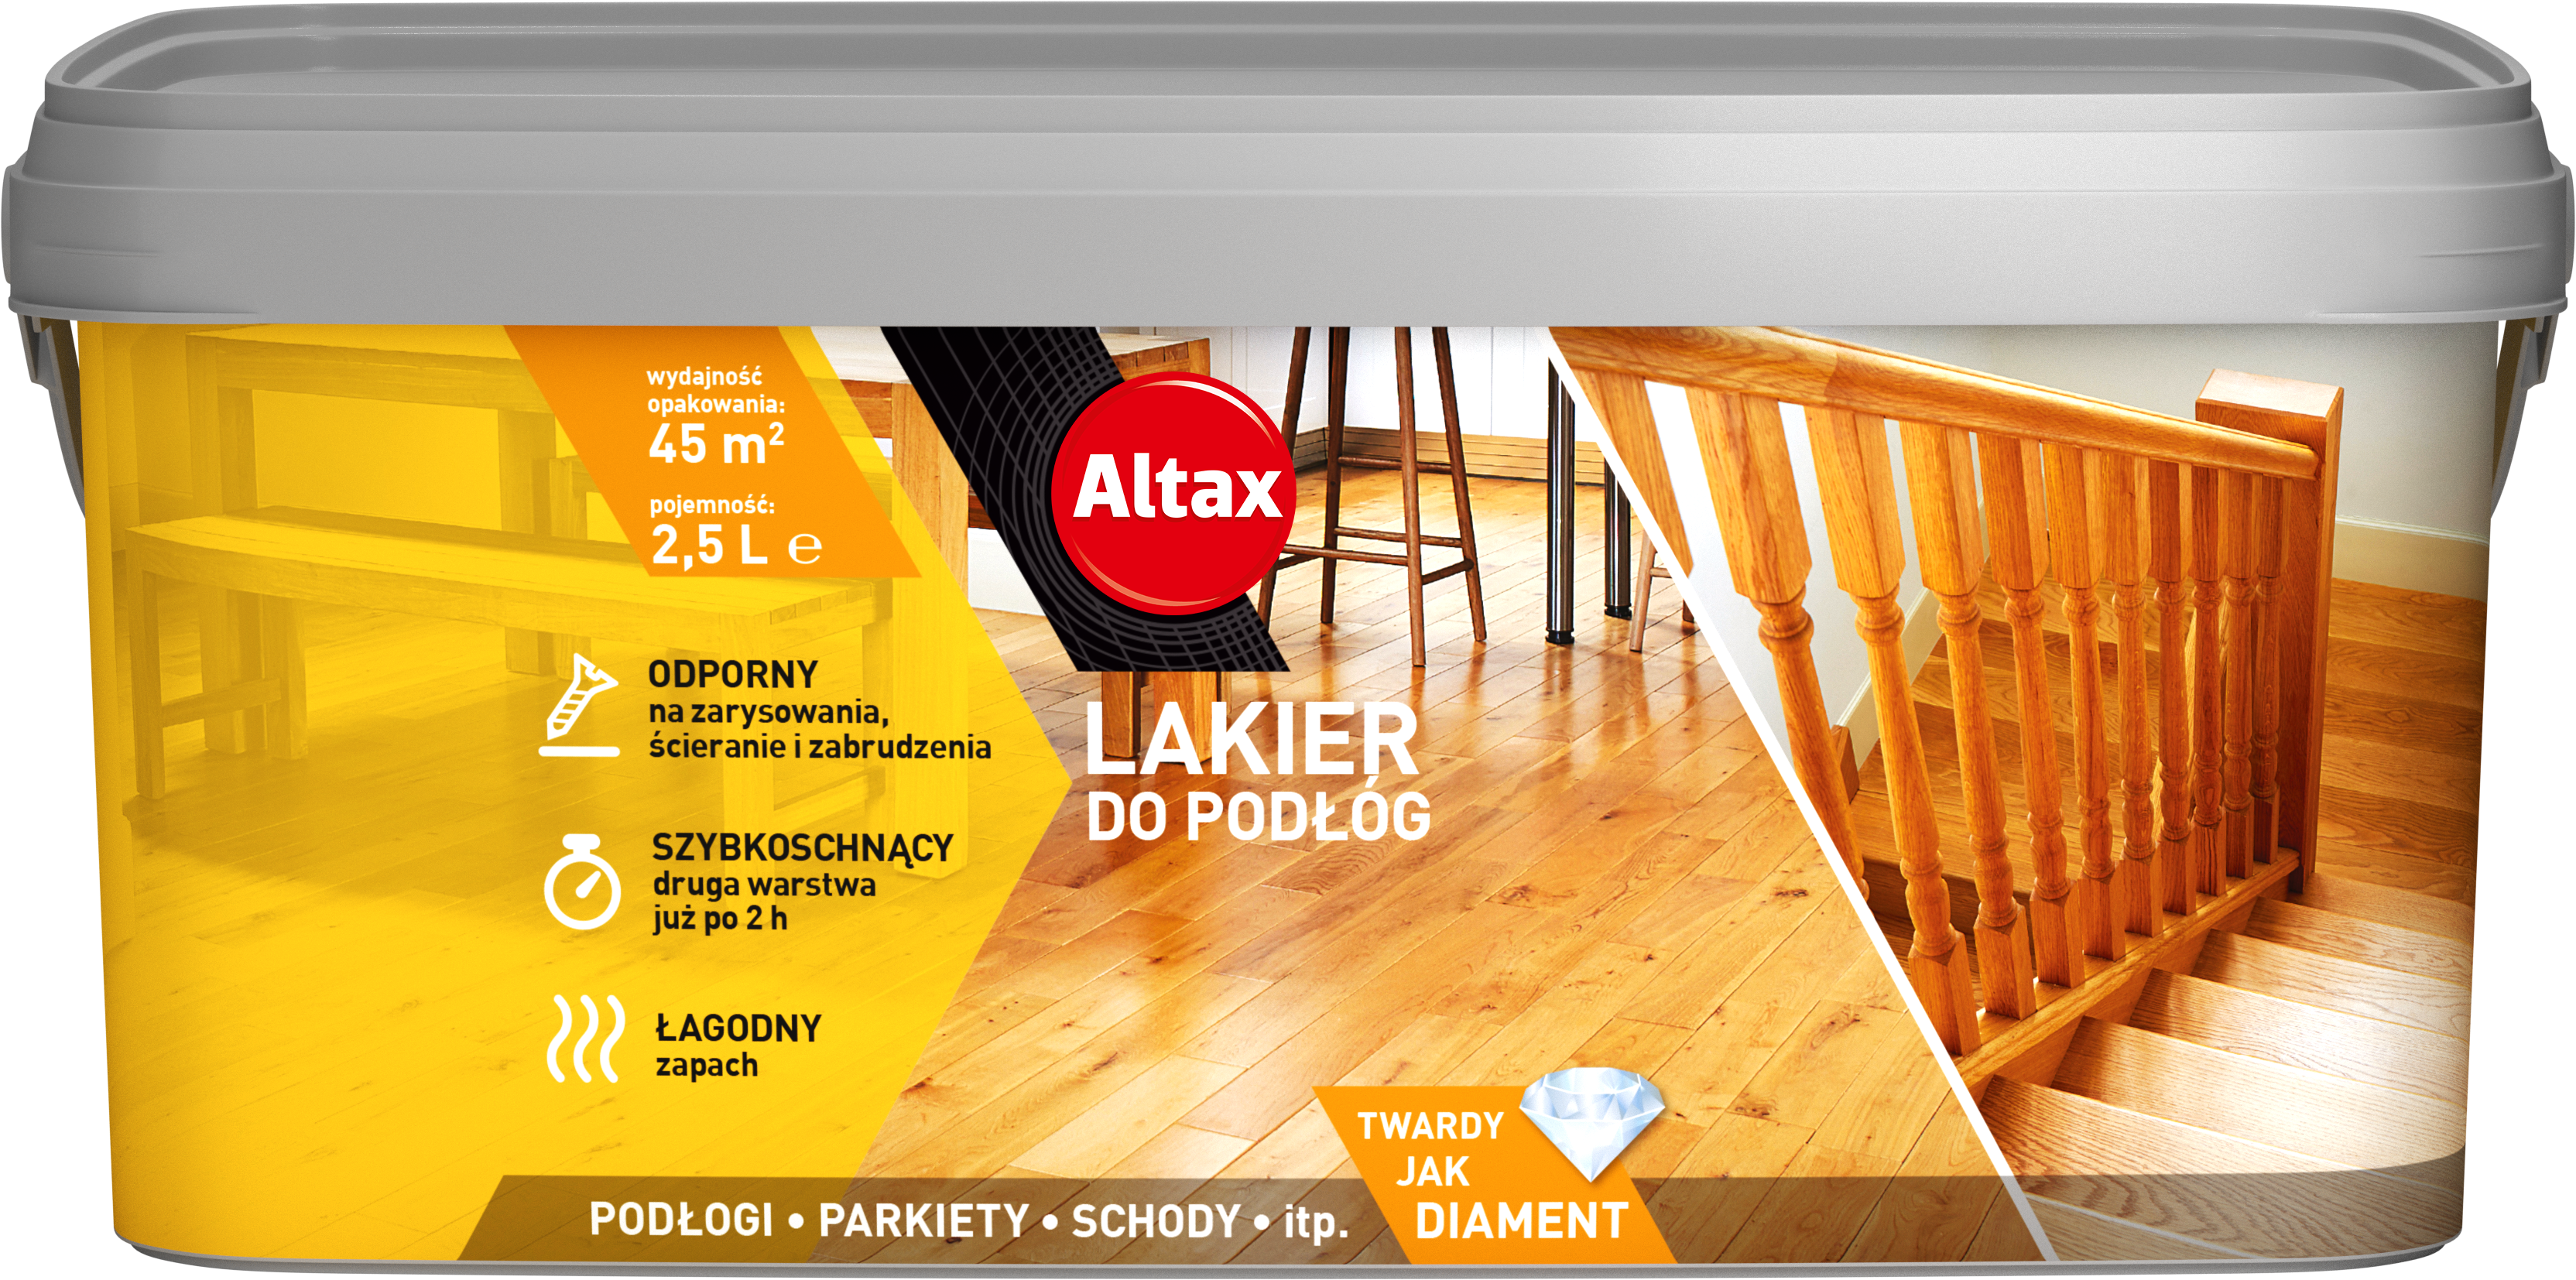 ALTAX-lakier-do-podlog-2,5L-01